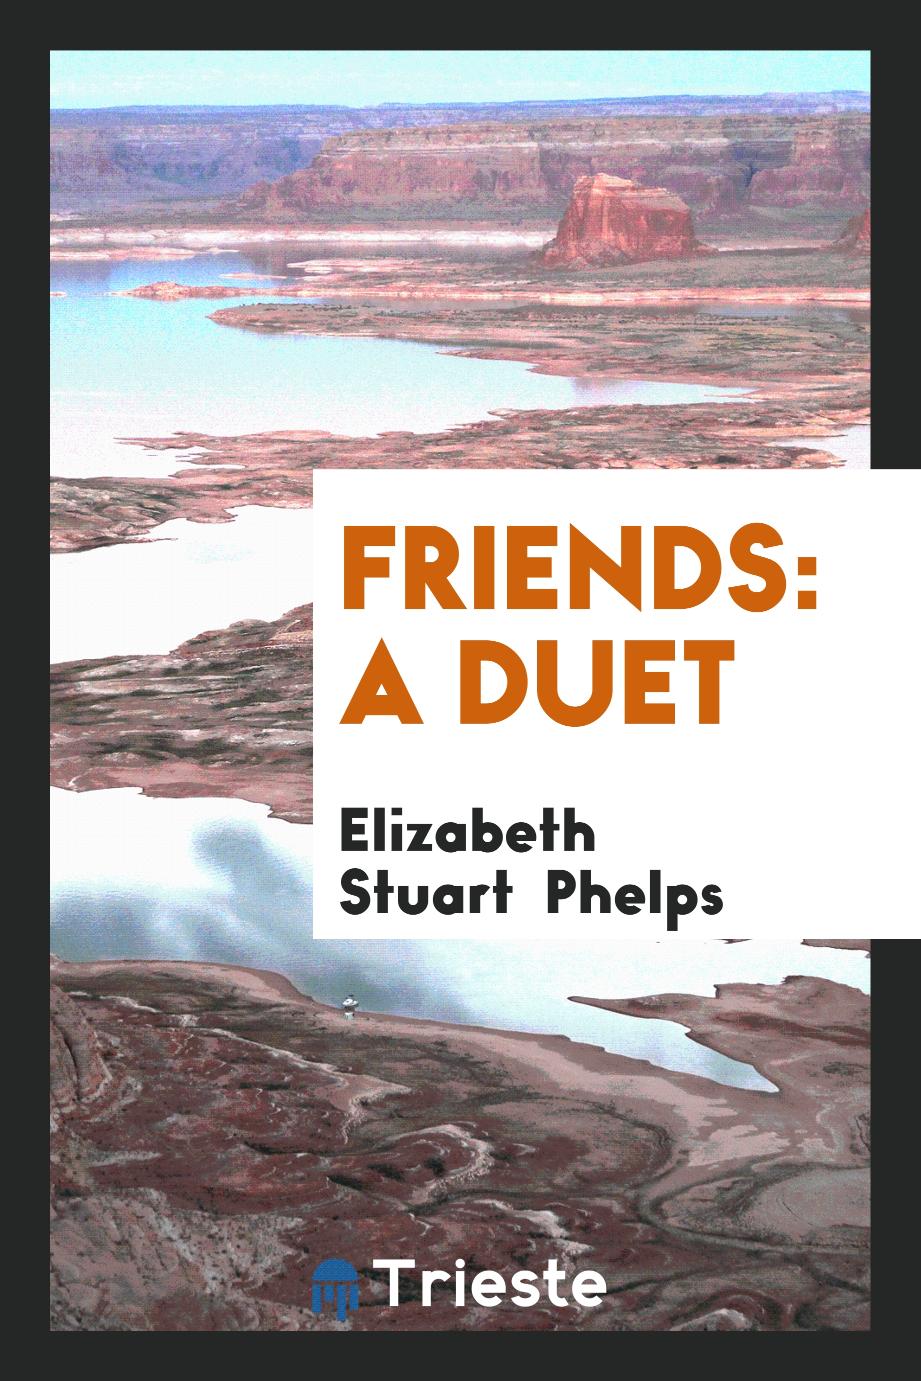 Friends: A Duet